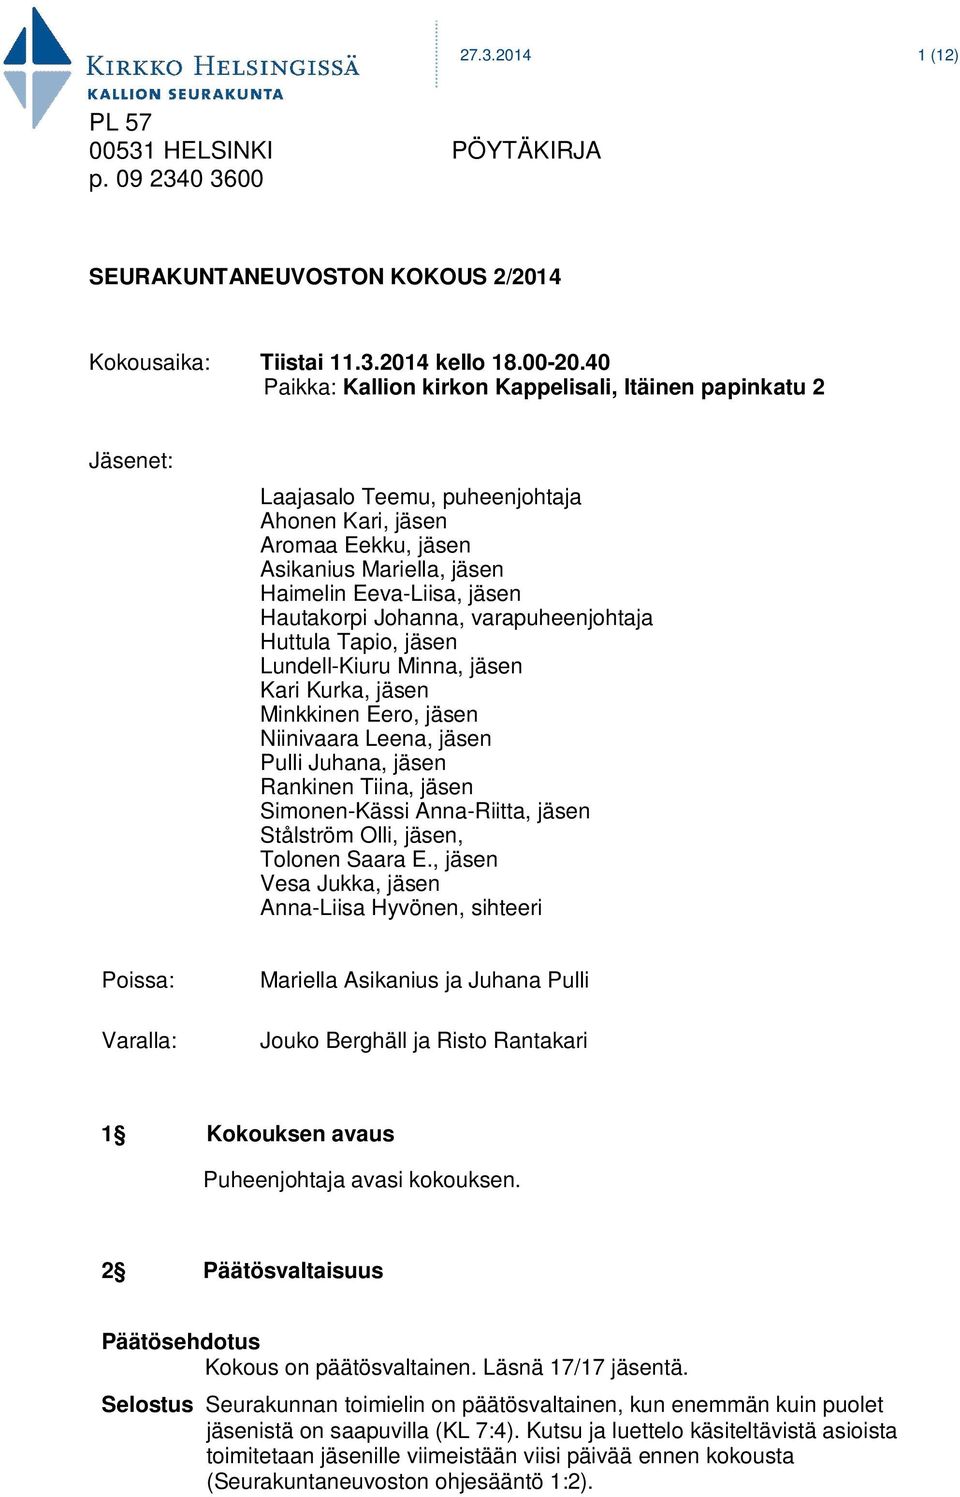 Hautakorpi Johanna, varapuheenjohtaja Huttula Tapio, jäsen Lundell-Kiuru Minna, jäsen Kari Kurka, jäsen Minkkinen Eero, jäsen Niinivaara Leena, jäsen Pulli Juhana, jäsen Rankinen Tiina, jäsen